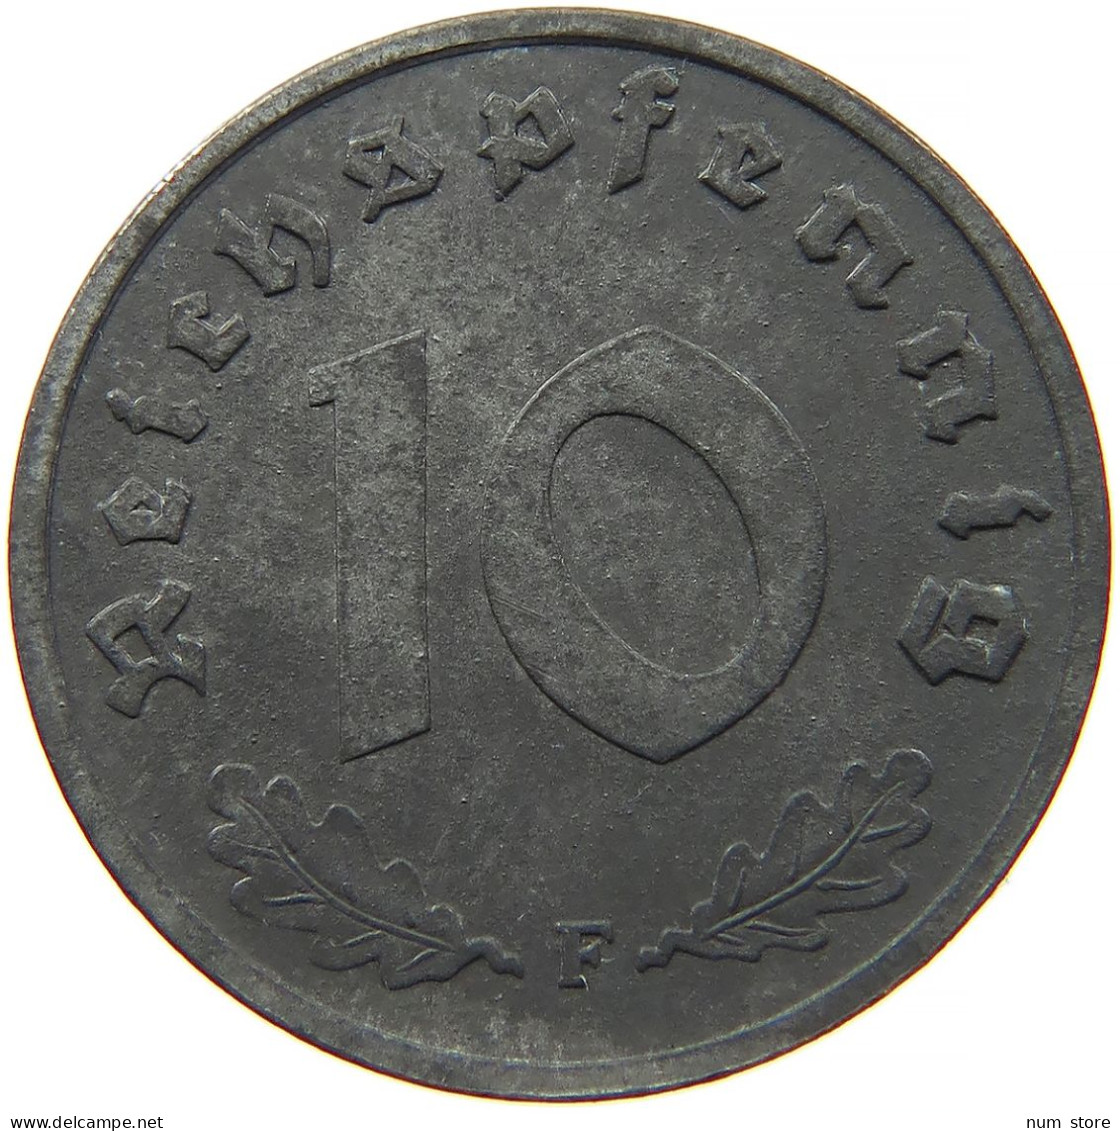 ALLIIERTE BESETZUNG 10 REICHSPFENNIG 1948  #t028 0357 - 10 Reichspfennig